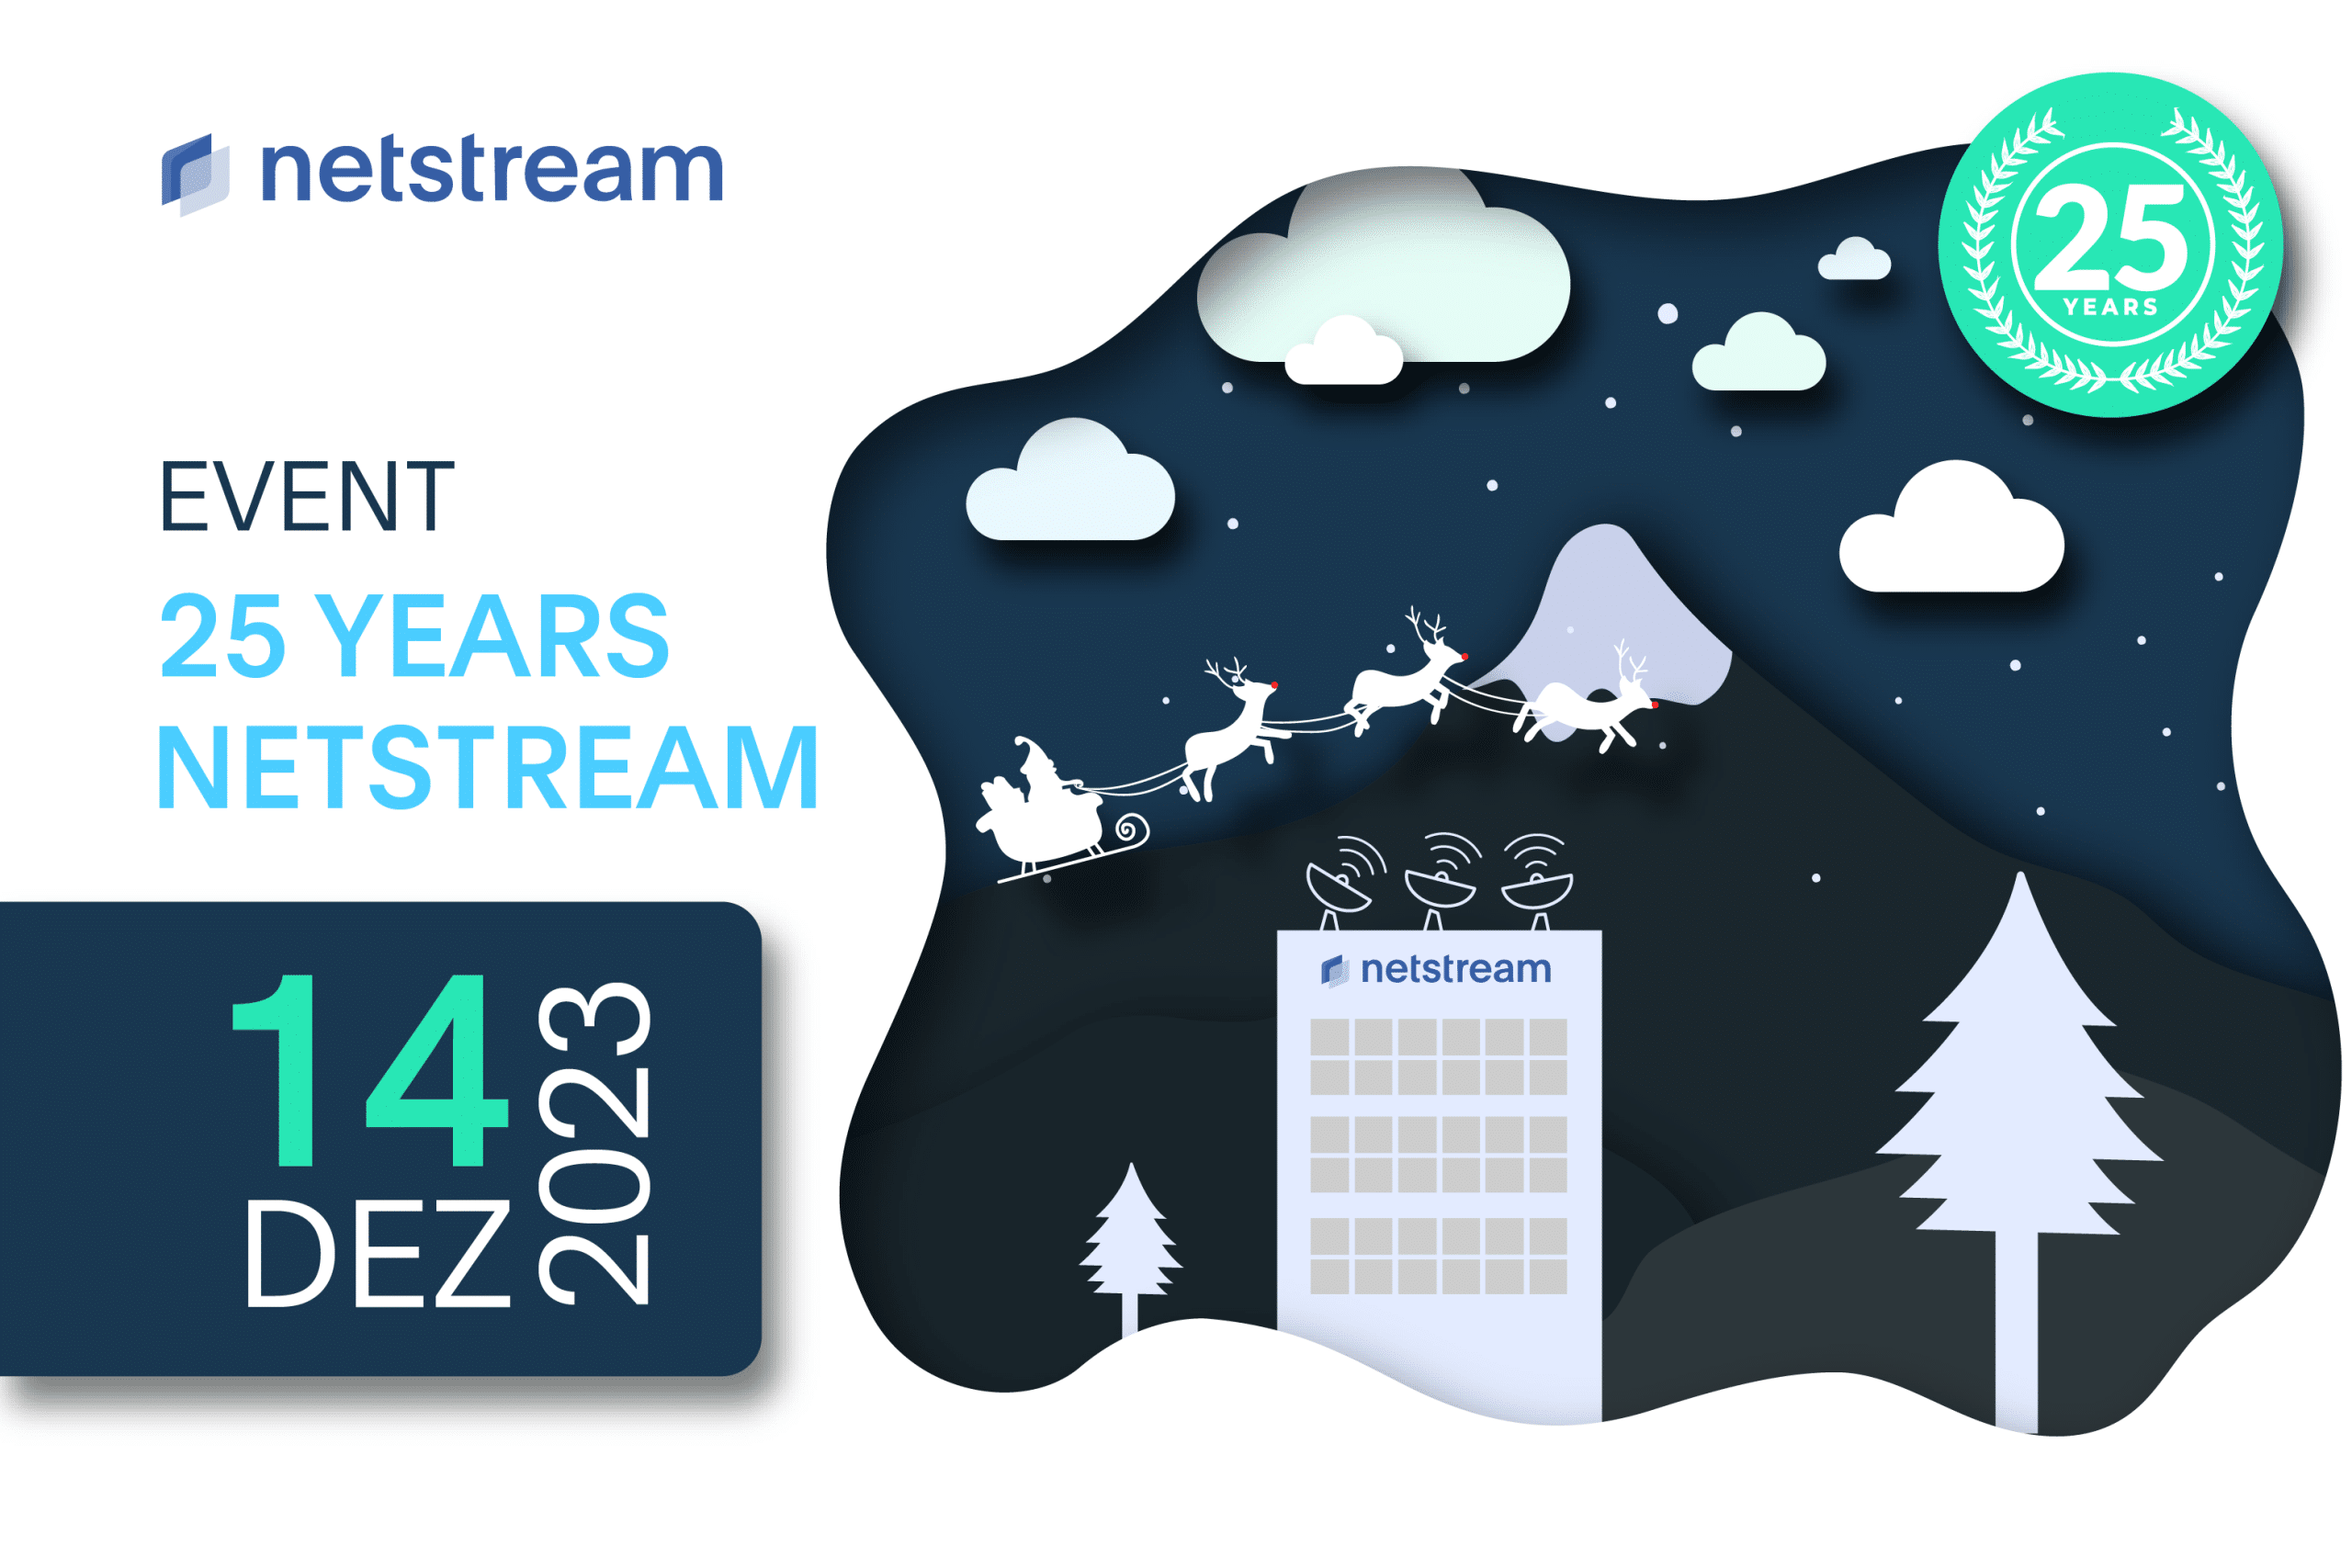 Event 25 years Netstream